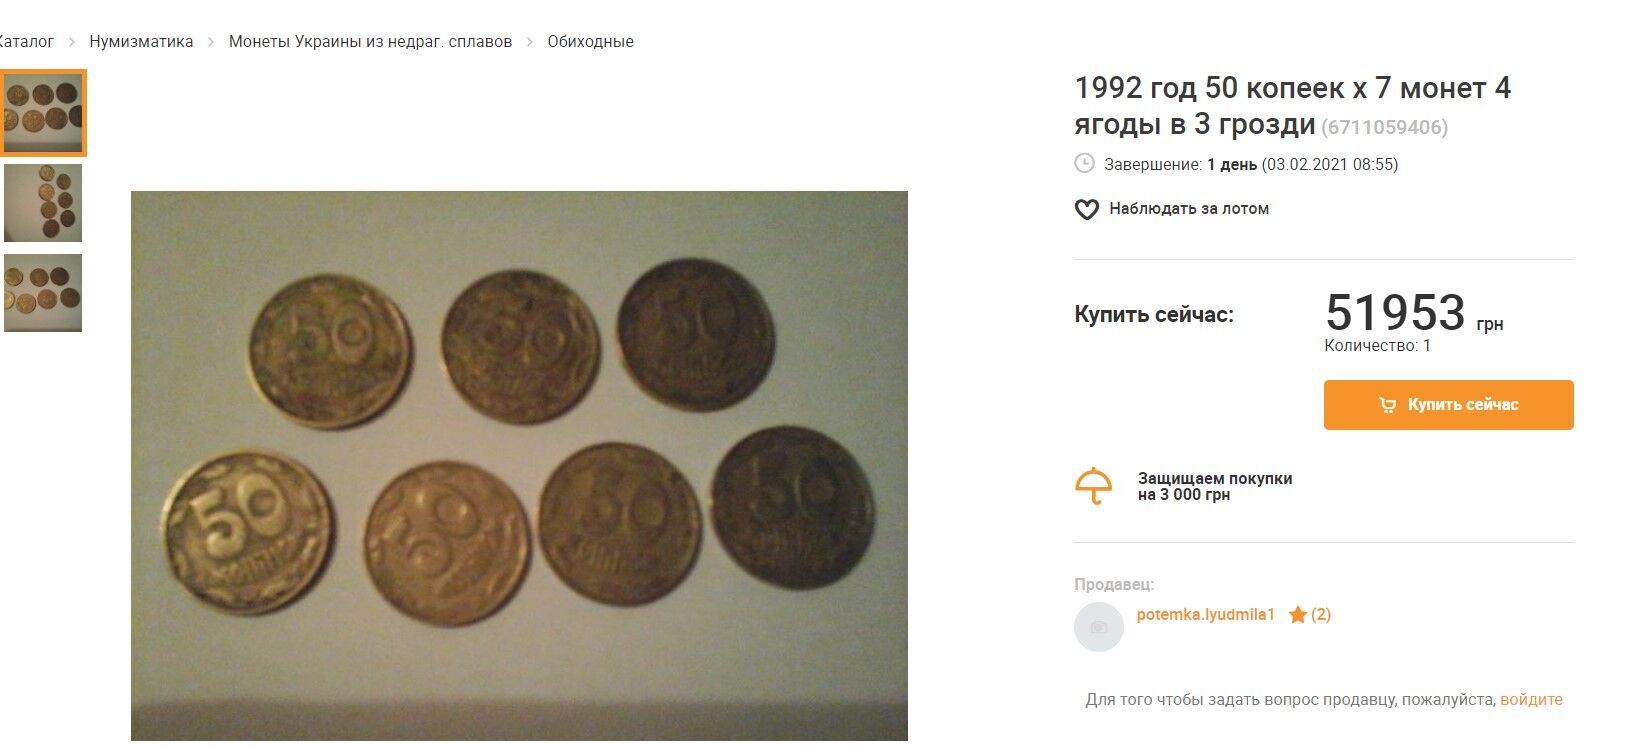 Монети продають за тисячі гривень